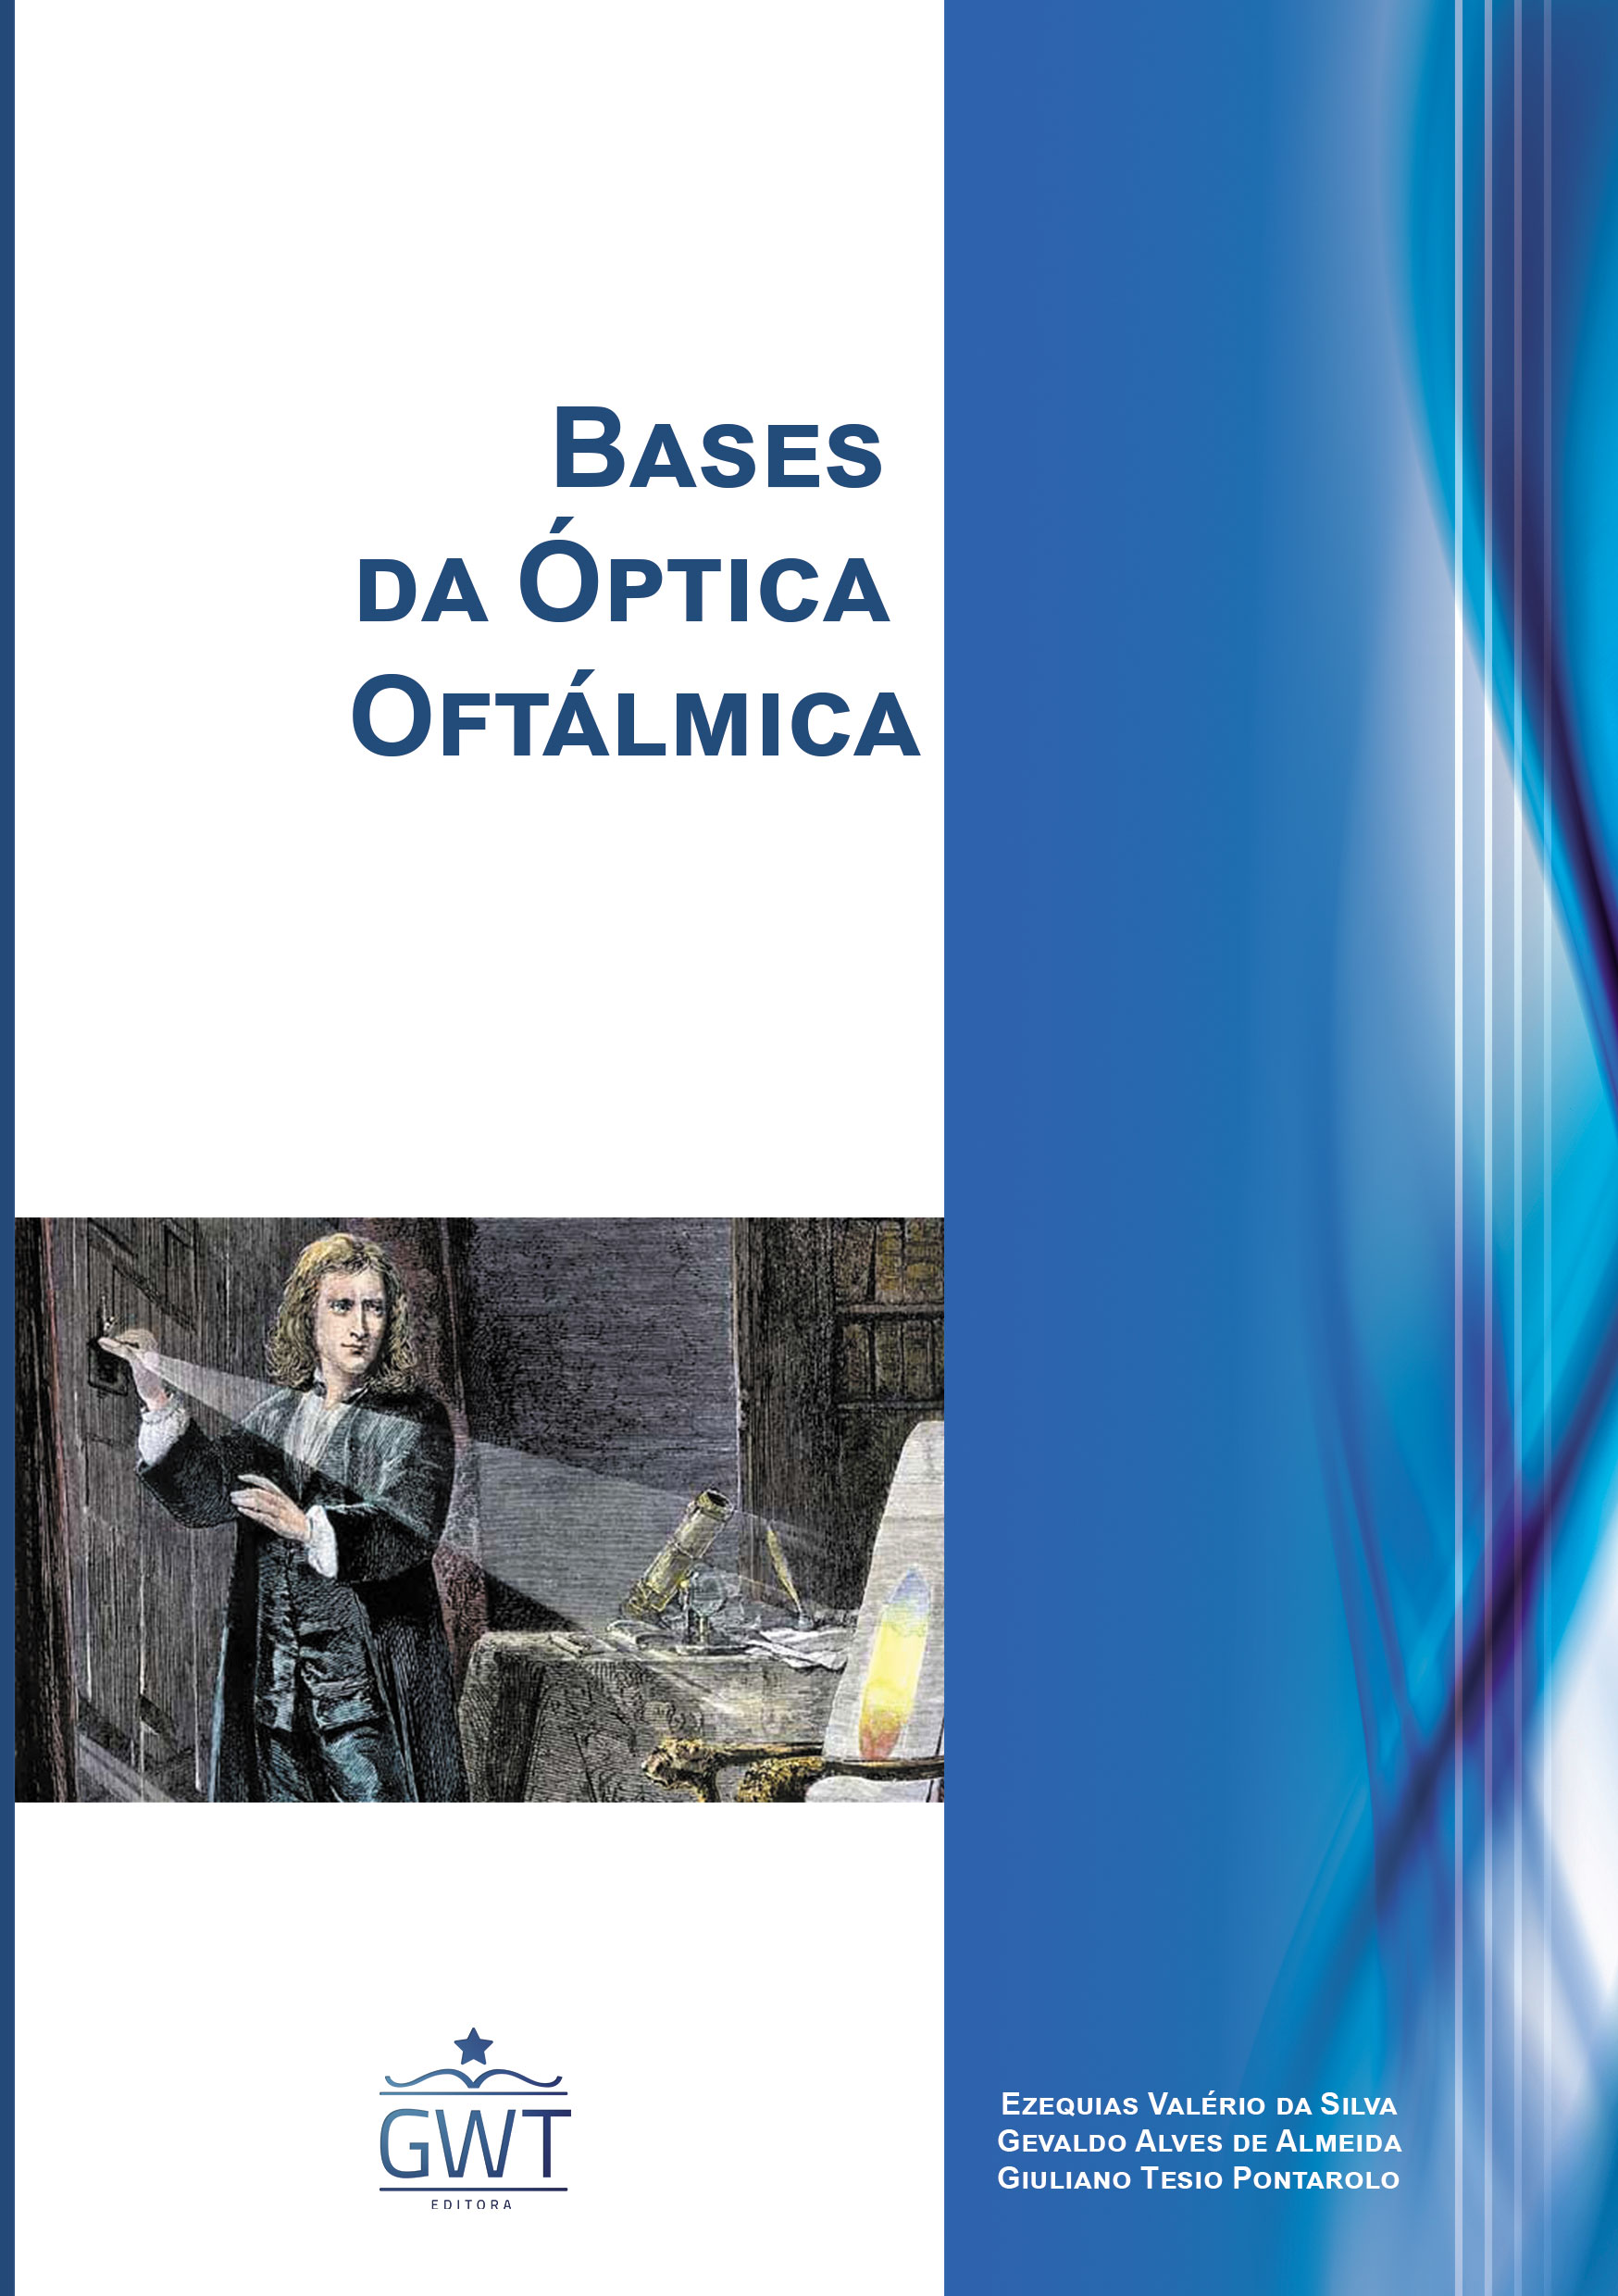 Capa-Bases-da-Óptica-Oftálmica-nova-logo.jpg